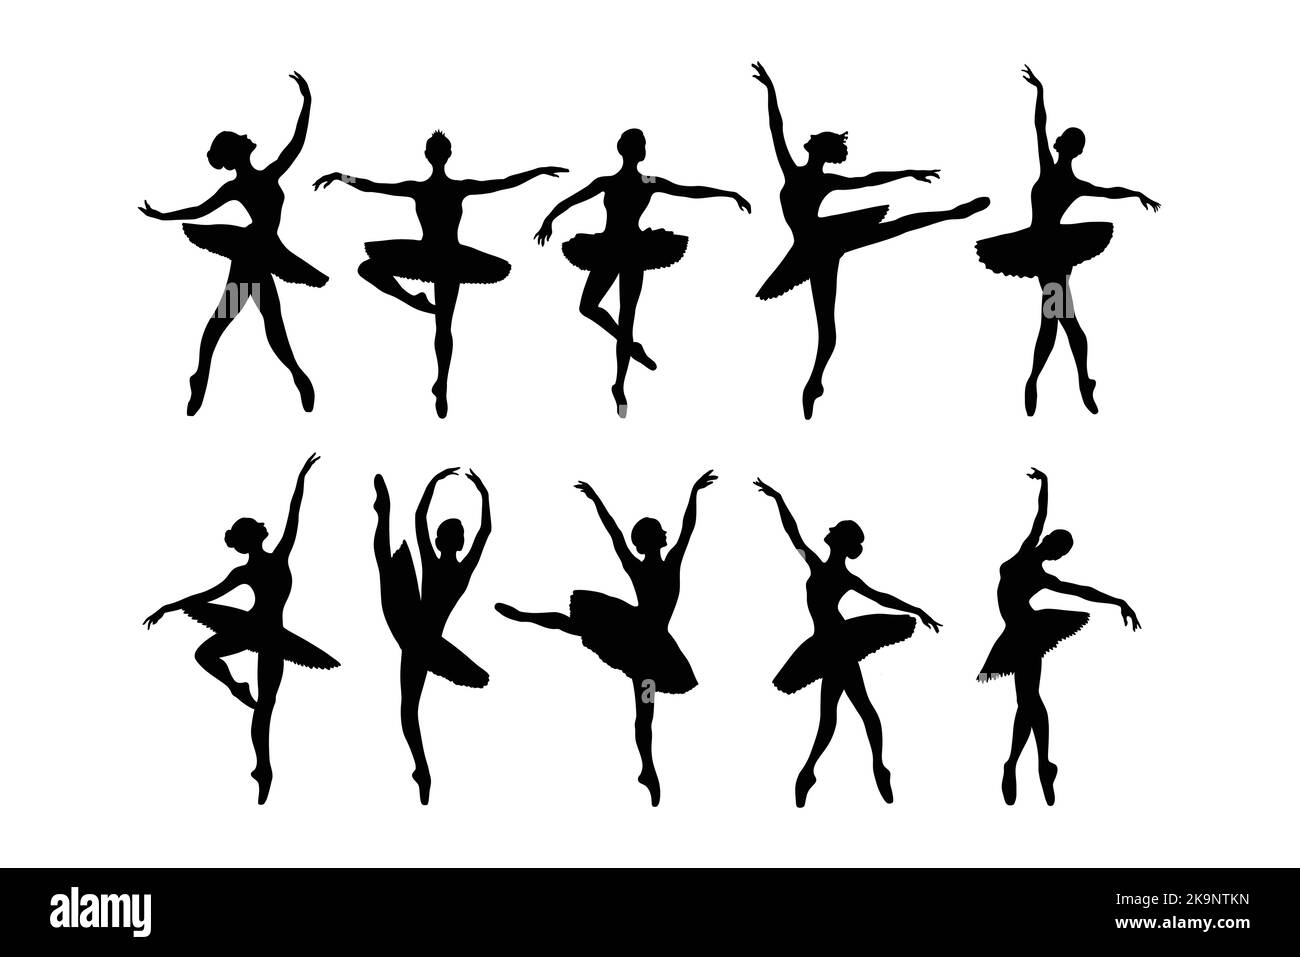 Balletttänzerin. Silhouetten tanzender Ballerinas, Vektorgrafik. Stock Vektor